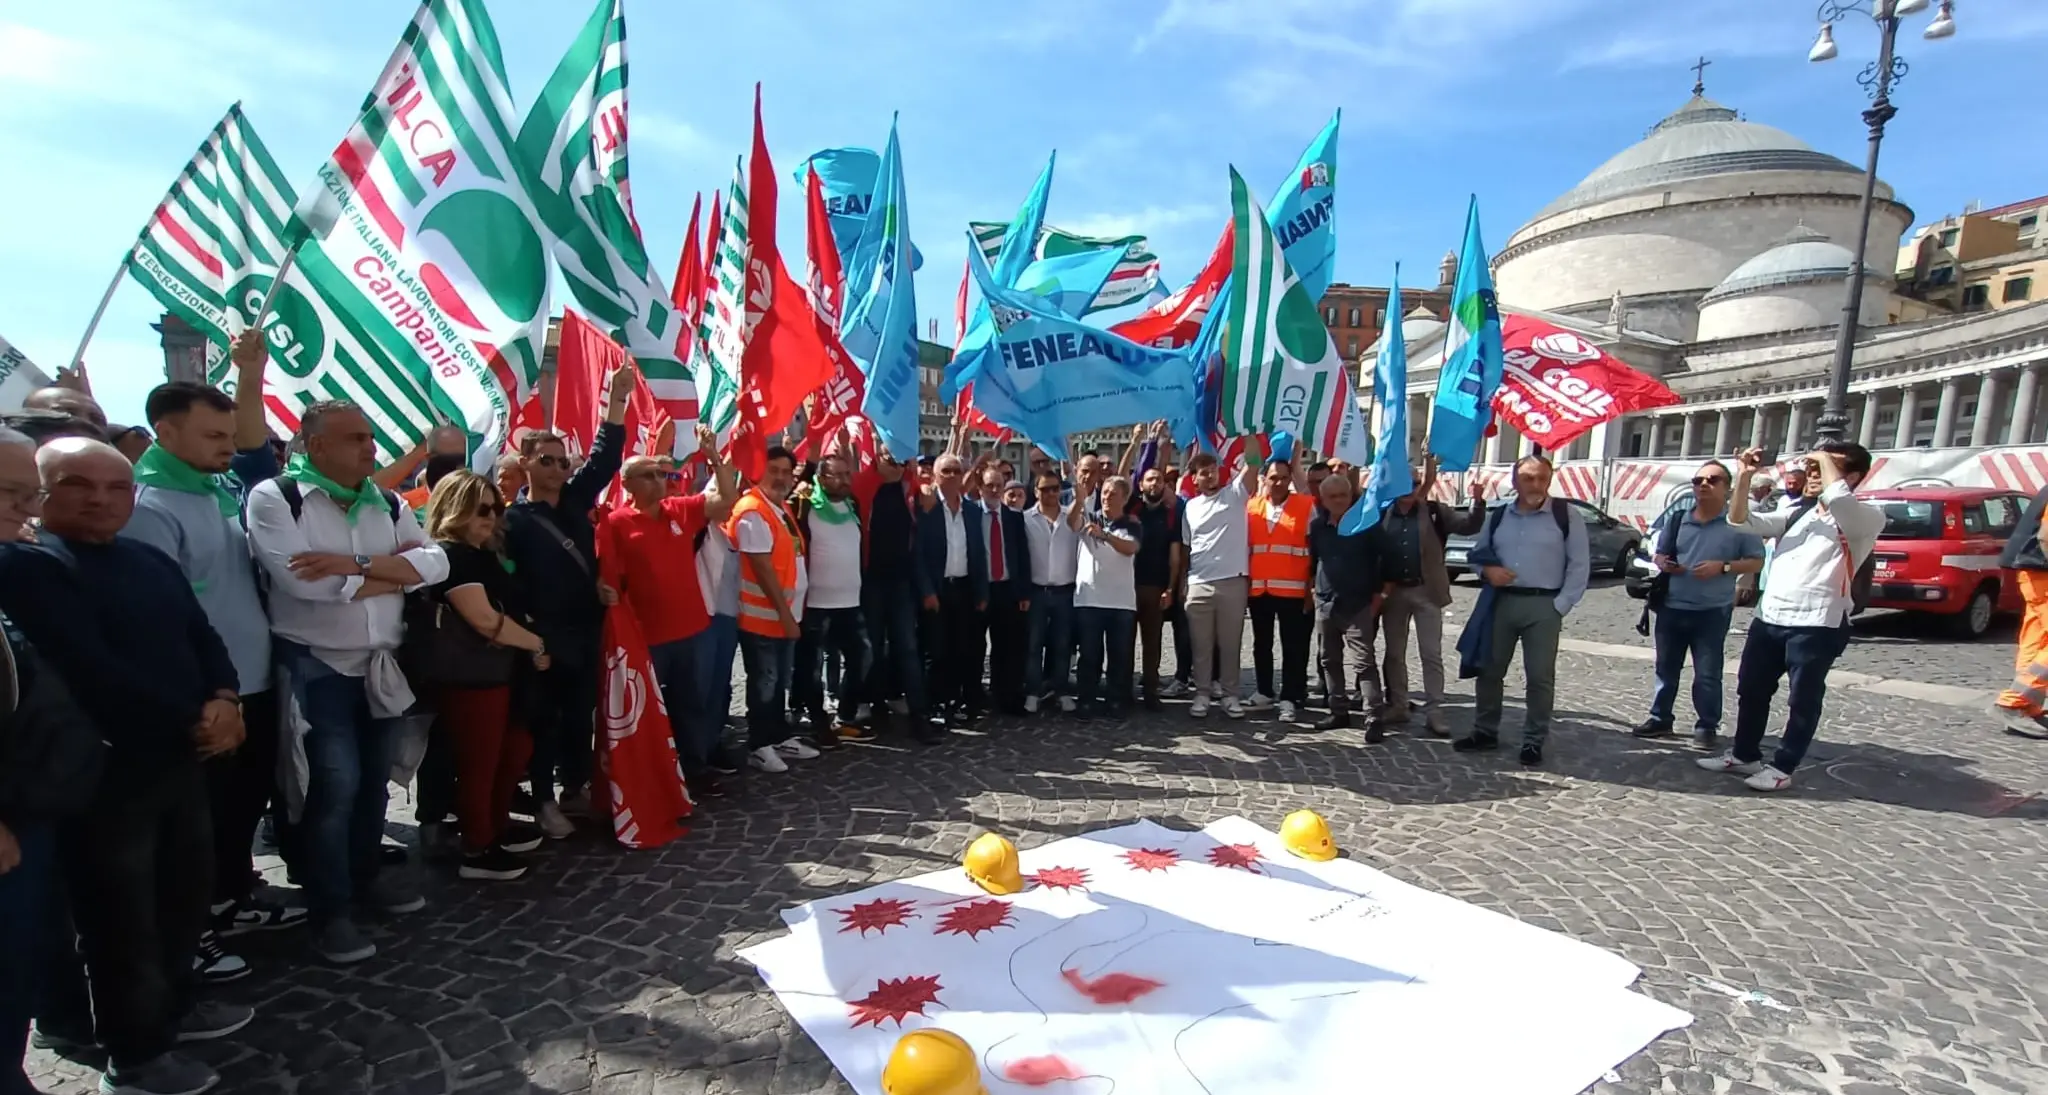 Ricci, Cgil Napoli e Campania: “Il giorno della rabbia”